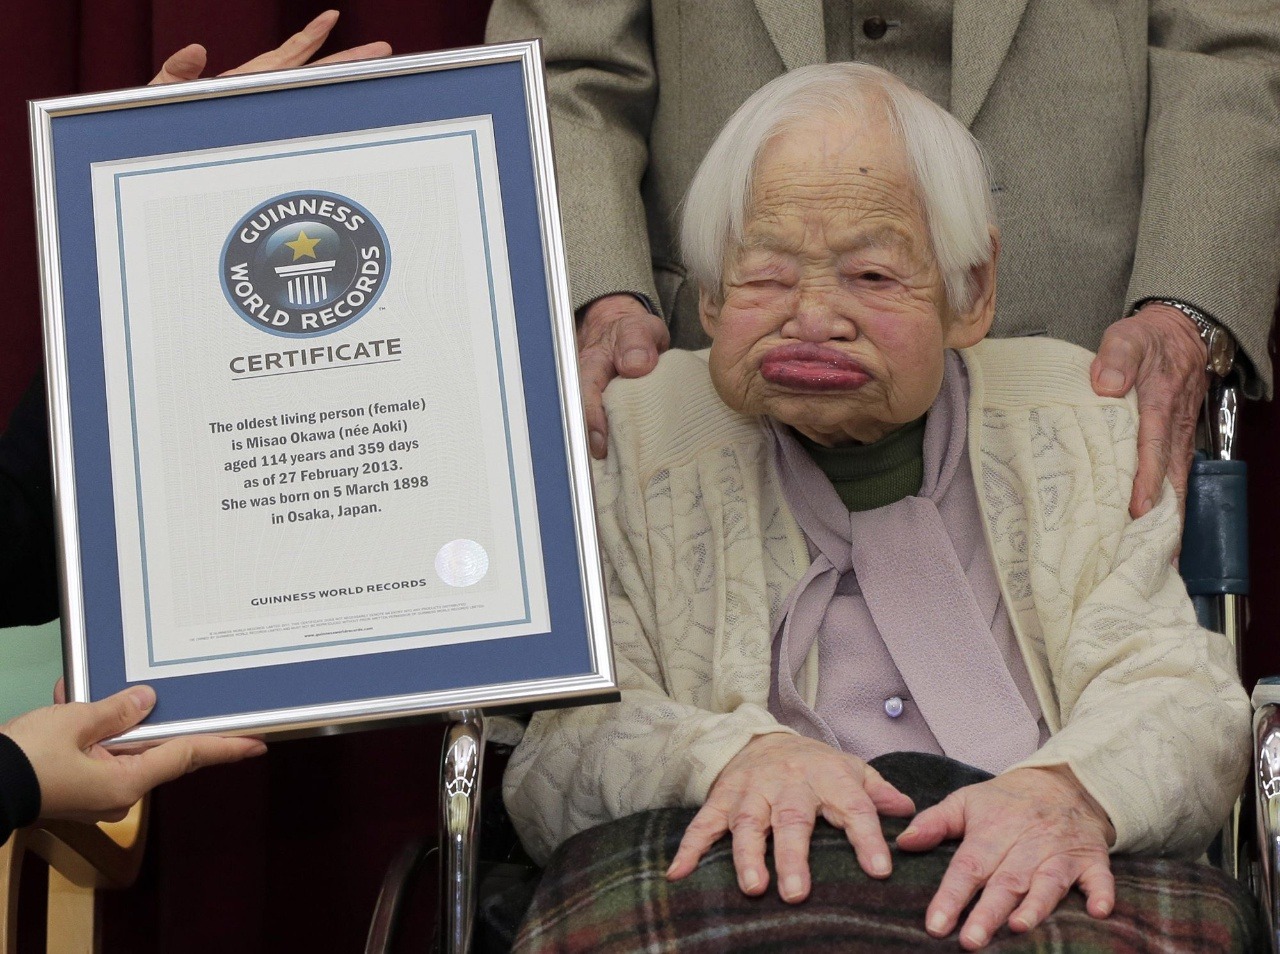 Misao Okawa sa stala vlani najstarším žijúcim človekom na svete, ktorý svoj vek vie aj dokázať.